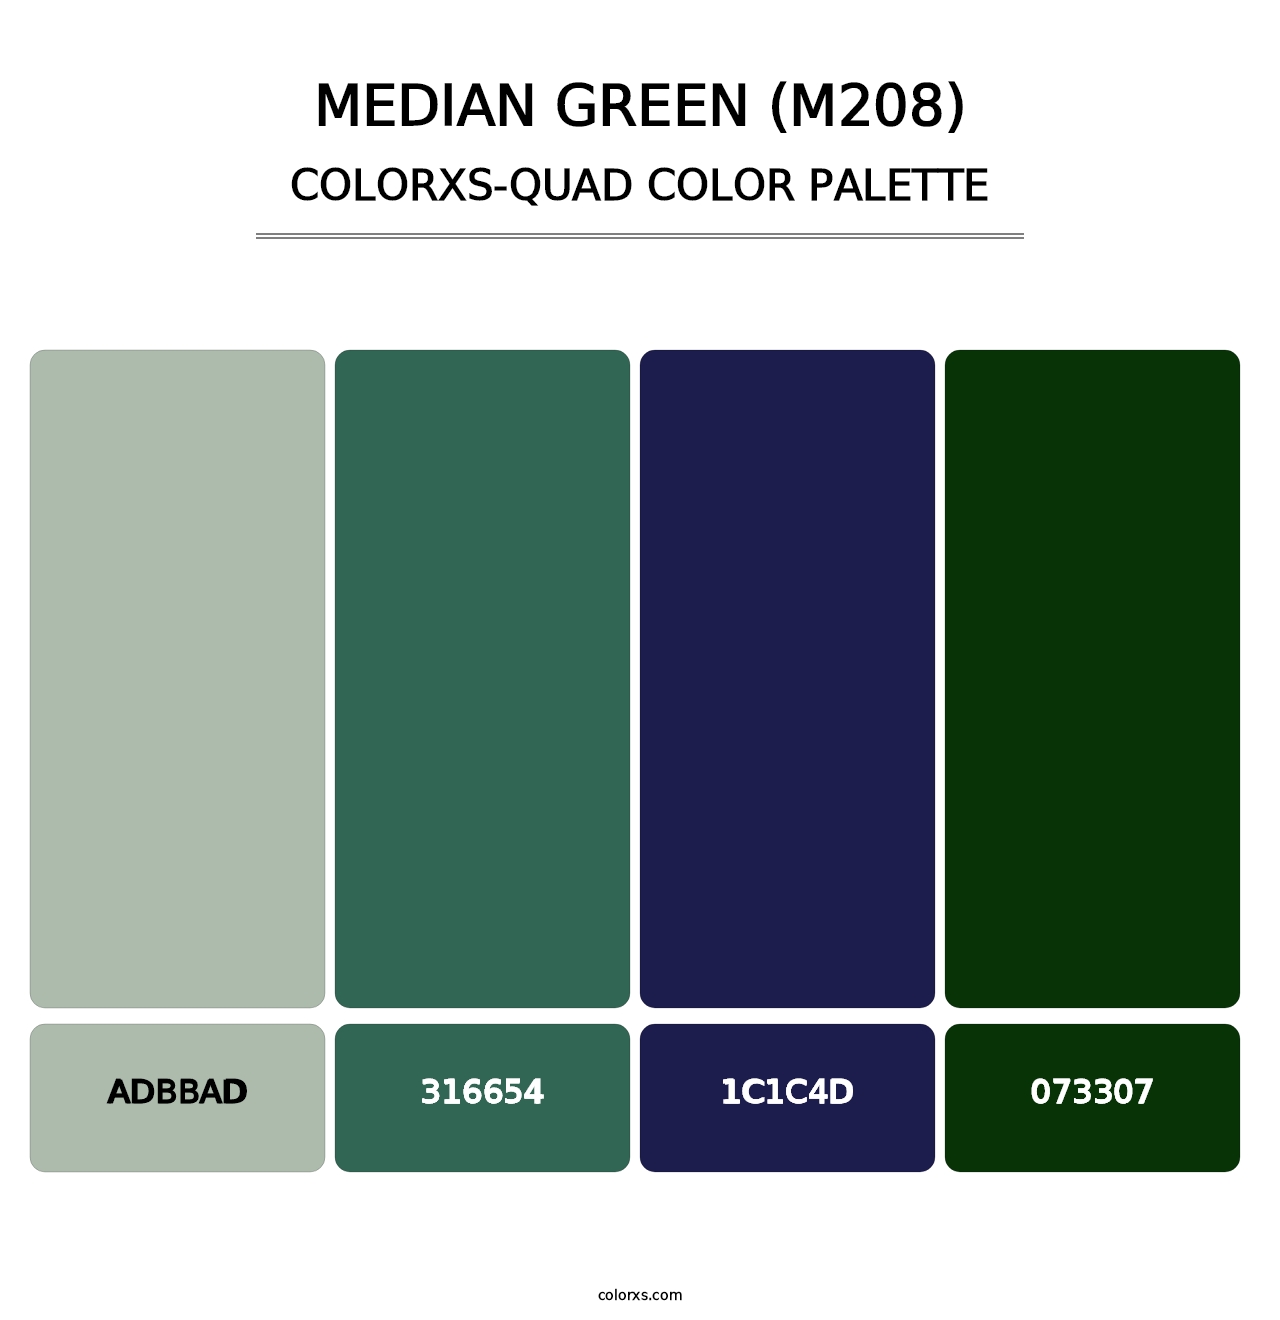 Median Green (M208) - Colorxs Quad Palette